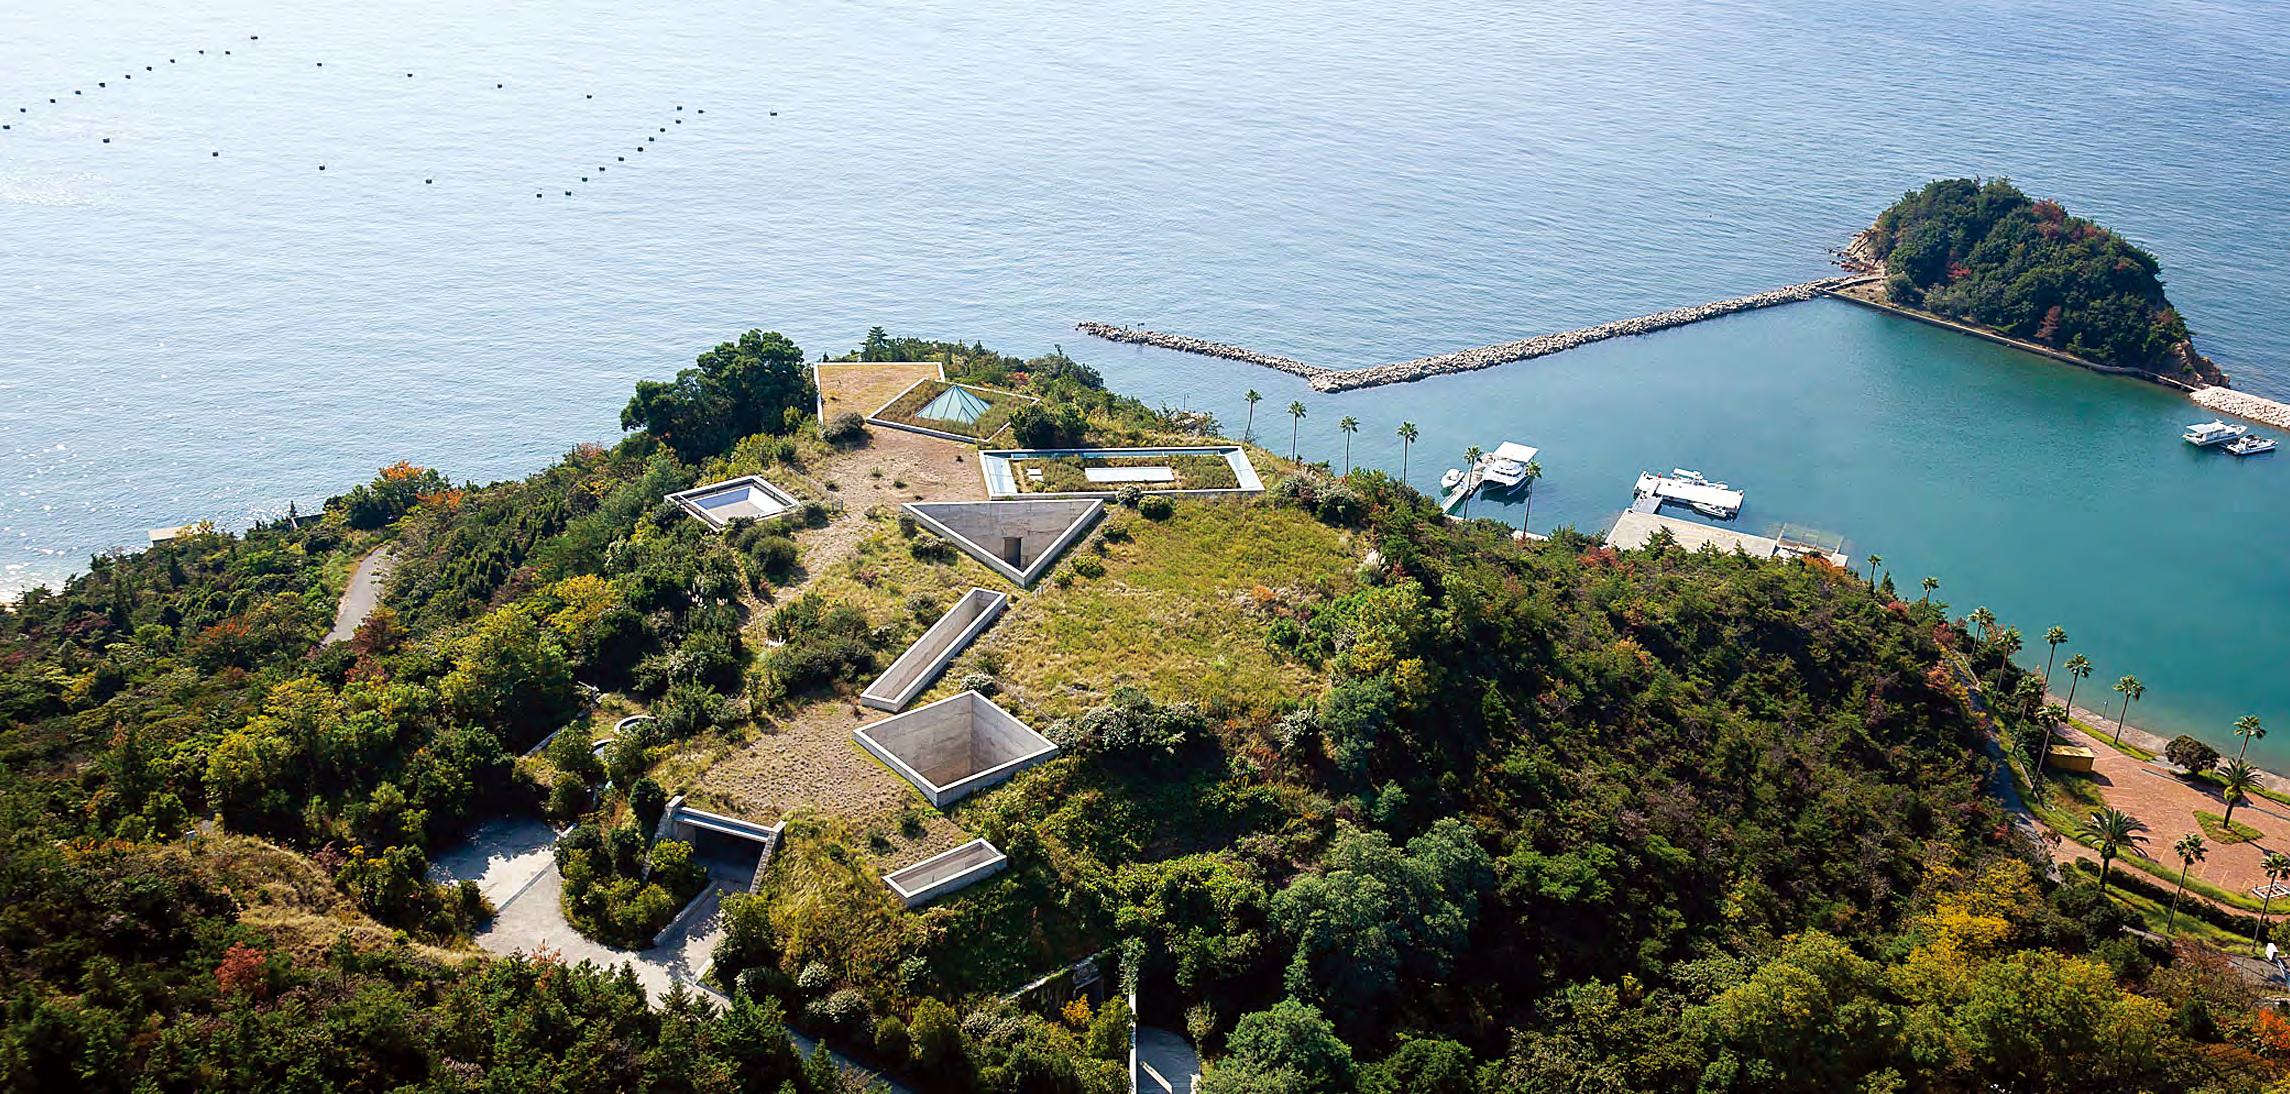 세계의 섬  버려진 섬의 화려한 부활  예술 프로젝트로 아름다운 변신     일본 시코쿠 나오시마